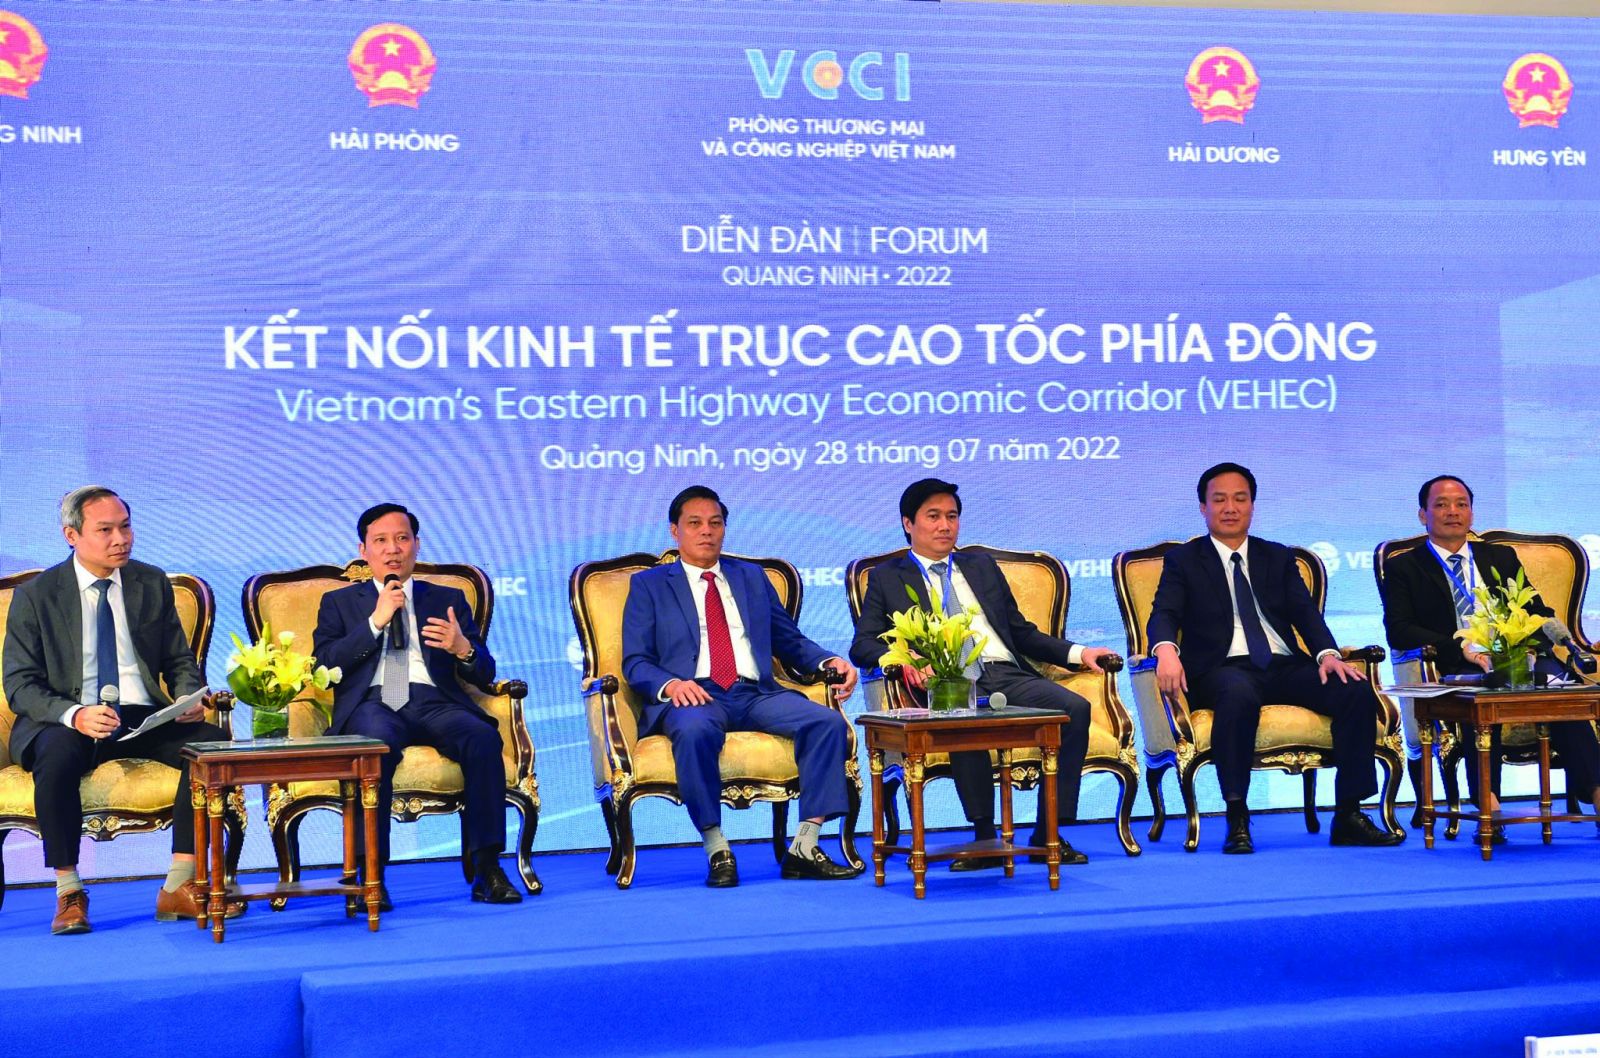  Diễn đàn kết nối kinh tế trục cao tốc phía Đông do VCCI phối hợp với 4 tỉnh, thành phố: Hải Phòng, Quảng Ninh, Hải Dương, Hưng Yên tổ chức vào tháng 7/2022 mở ra cơ hội phát triển cho các địa phương nằm trên trục cao tốc